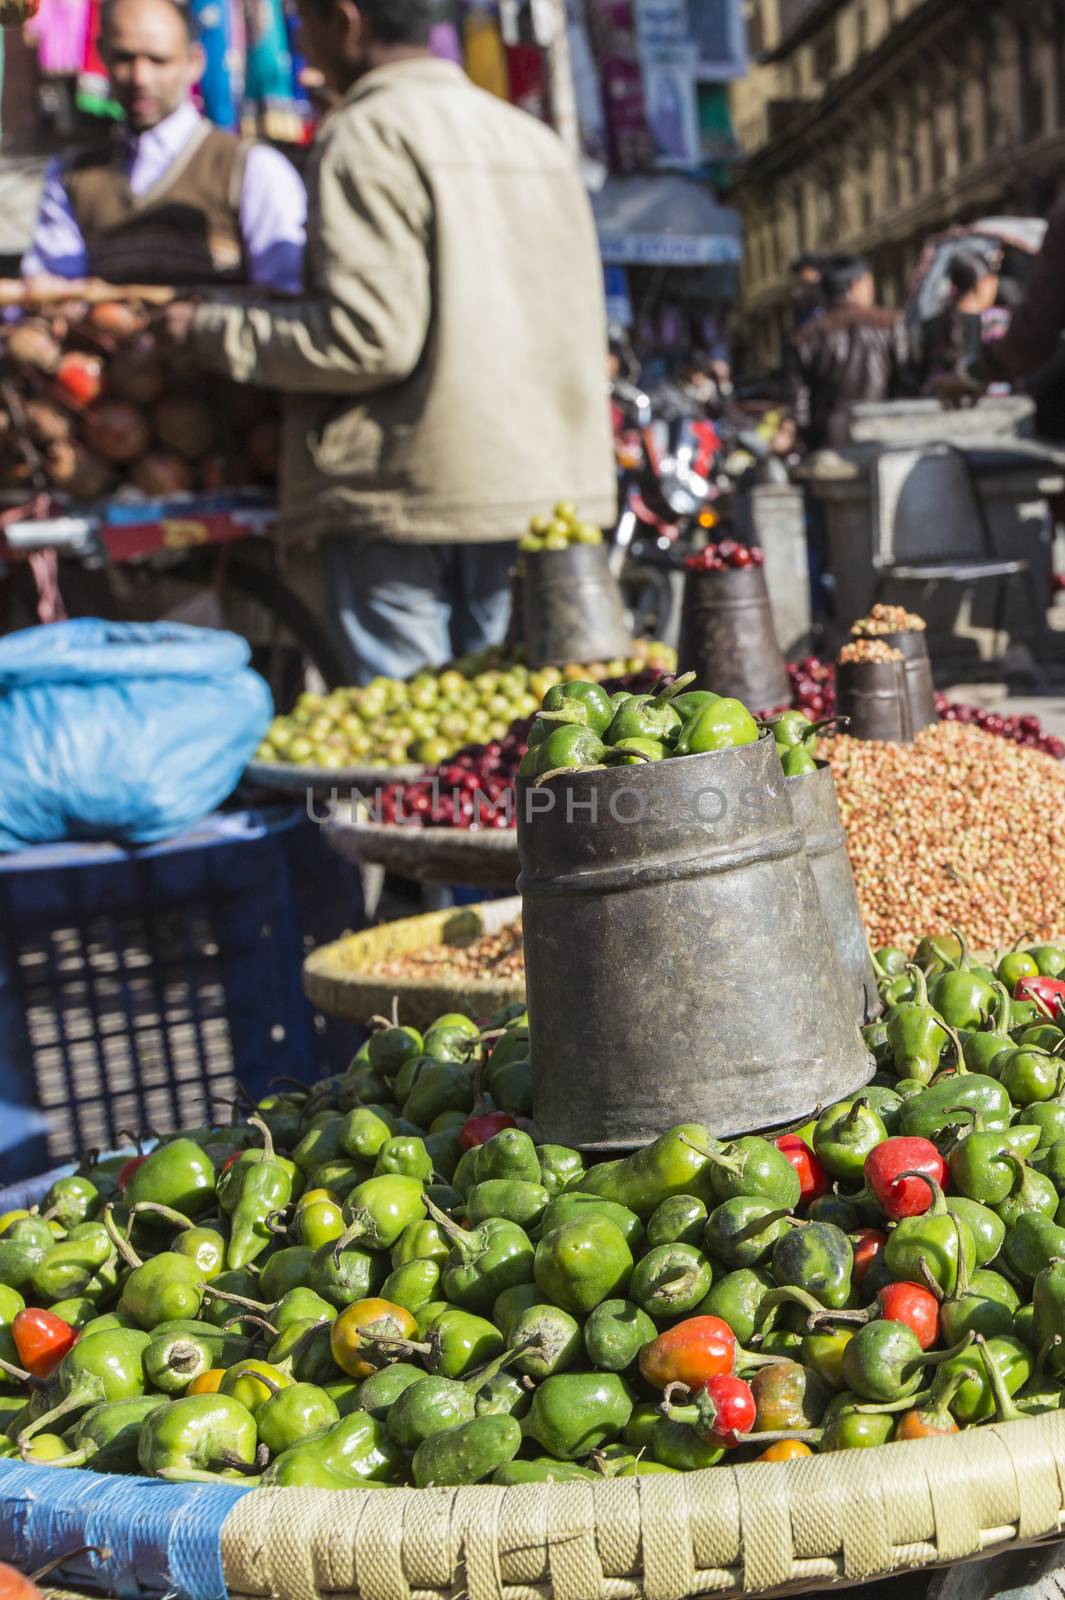 Local market in Nepal.     by mariusz_prusaczyk